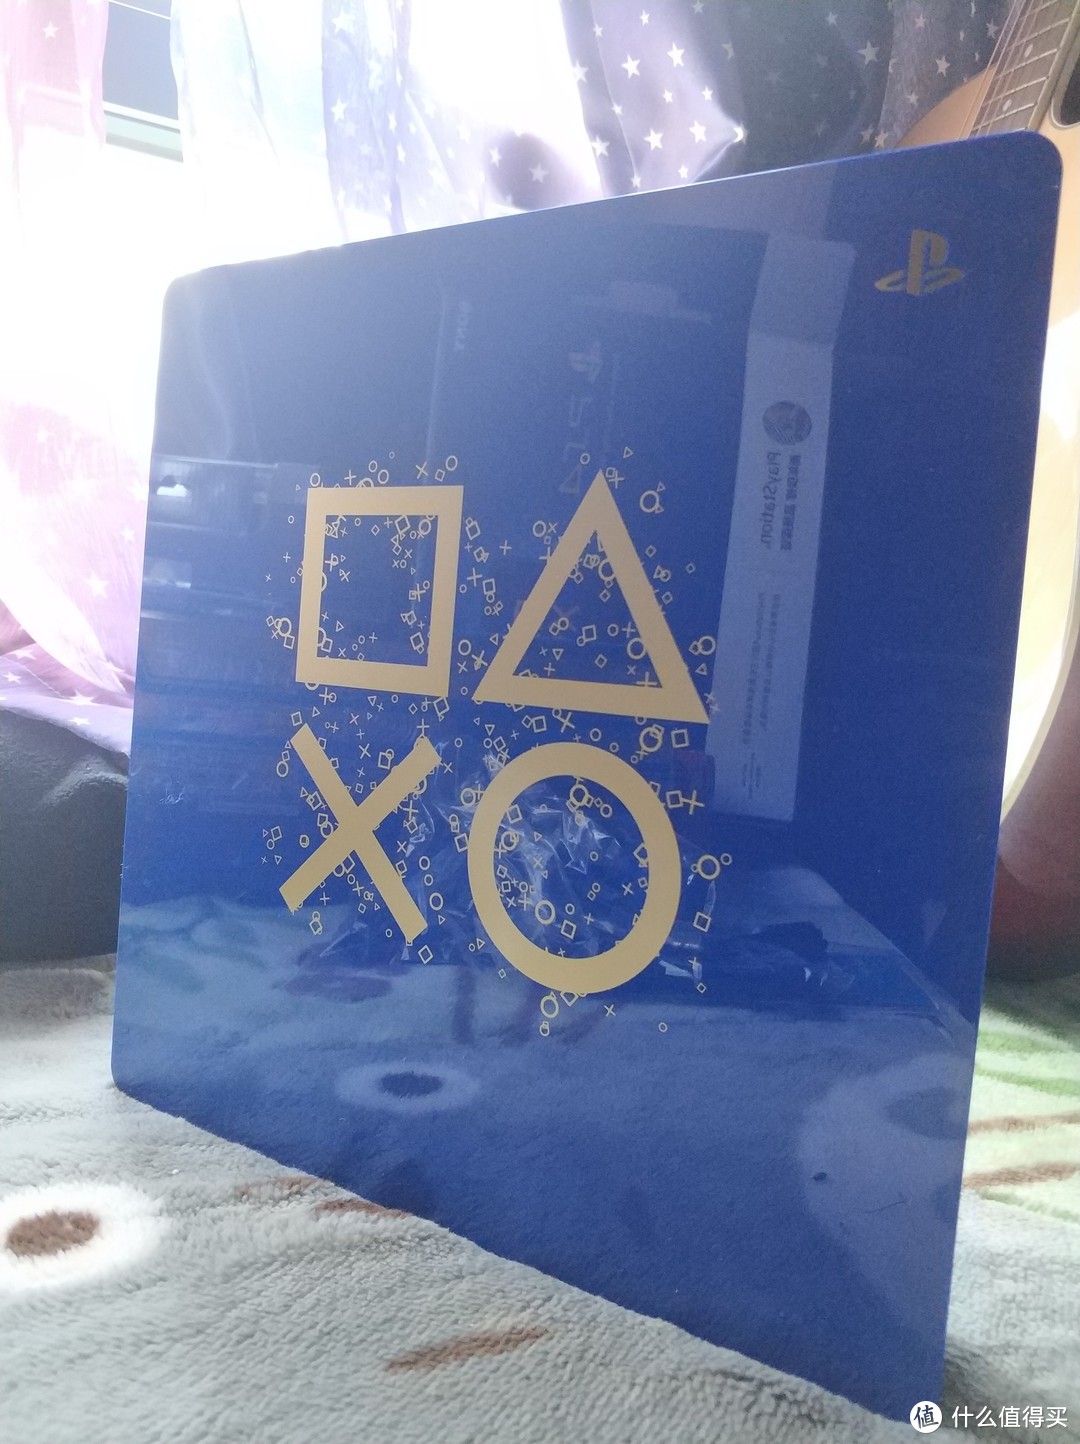 冲动消费为情怀买单—PlayStation 4 2018年Days of Play 限量纪念版入手